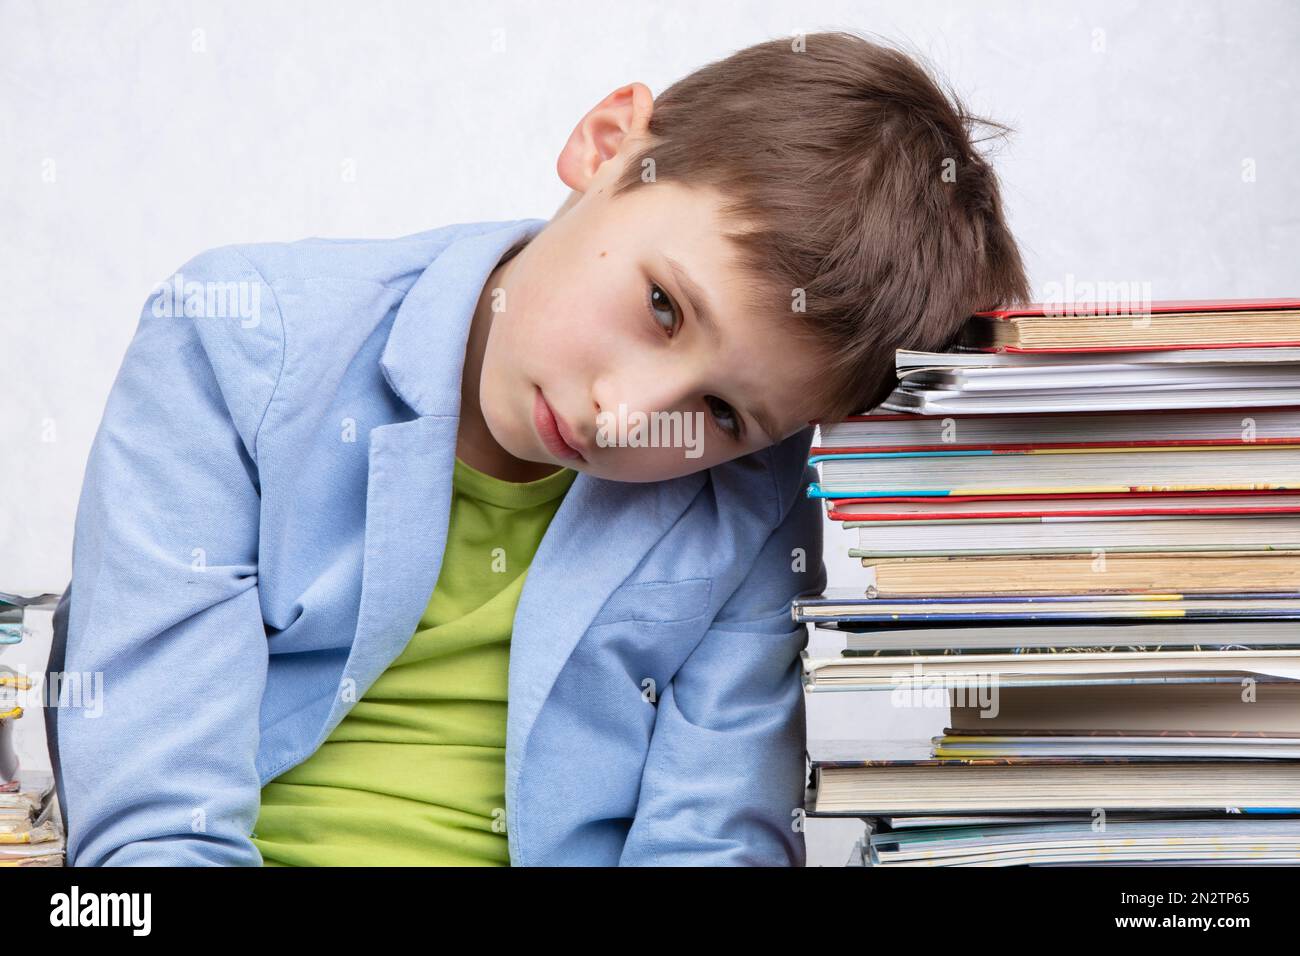 Un garçon fatigué d'âge scolaire est assis entre des piles de livres.  Triste enfant avec des livres Photo Stock - Alamy